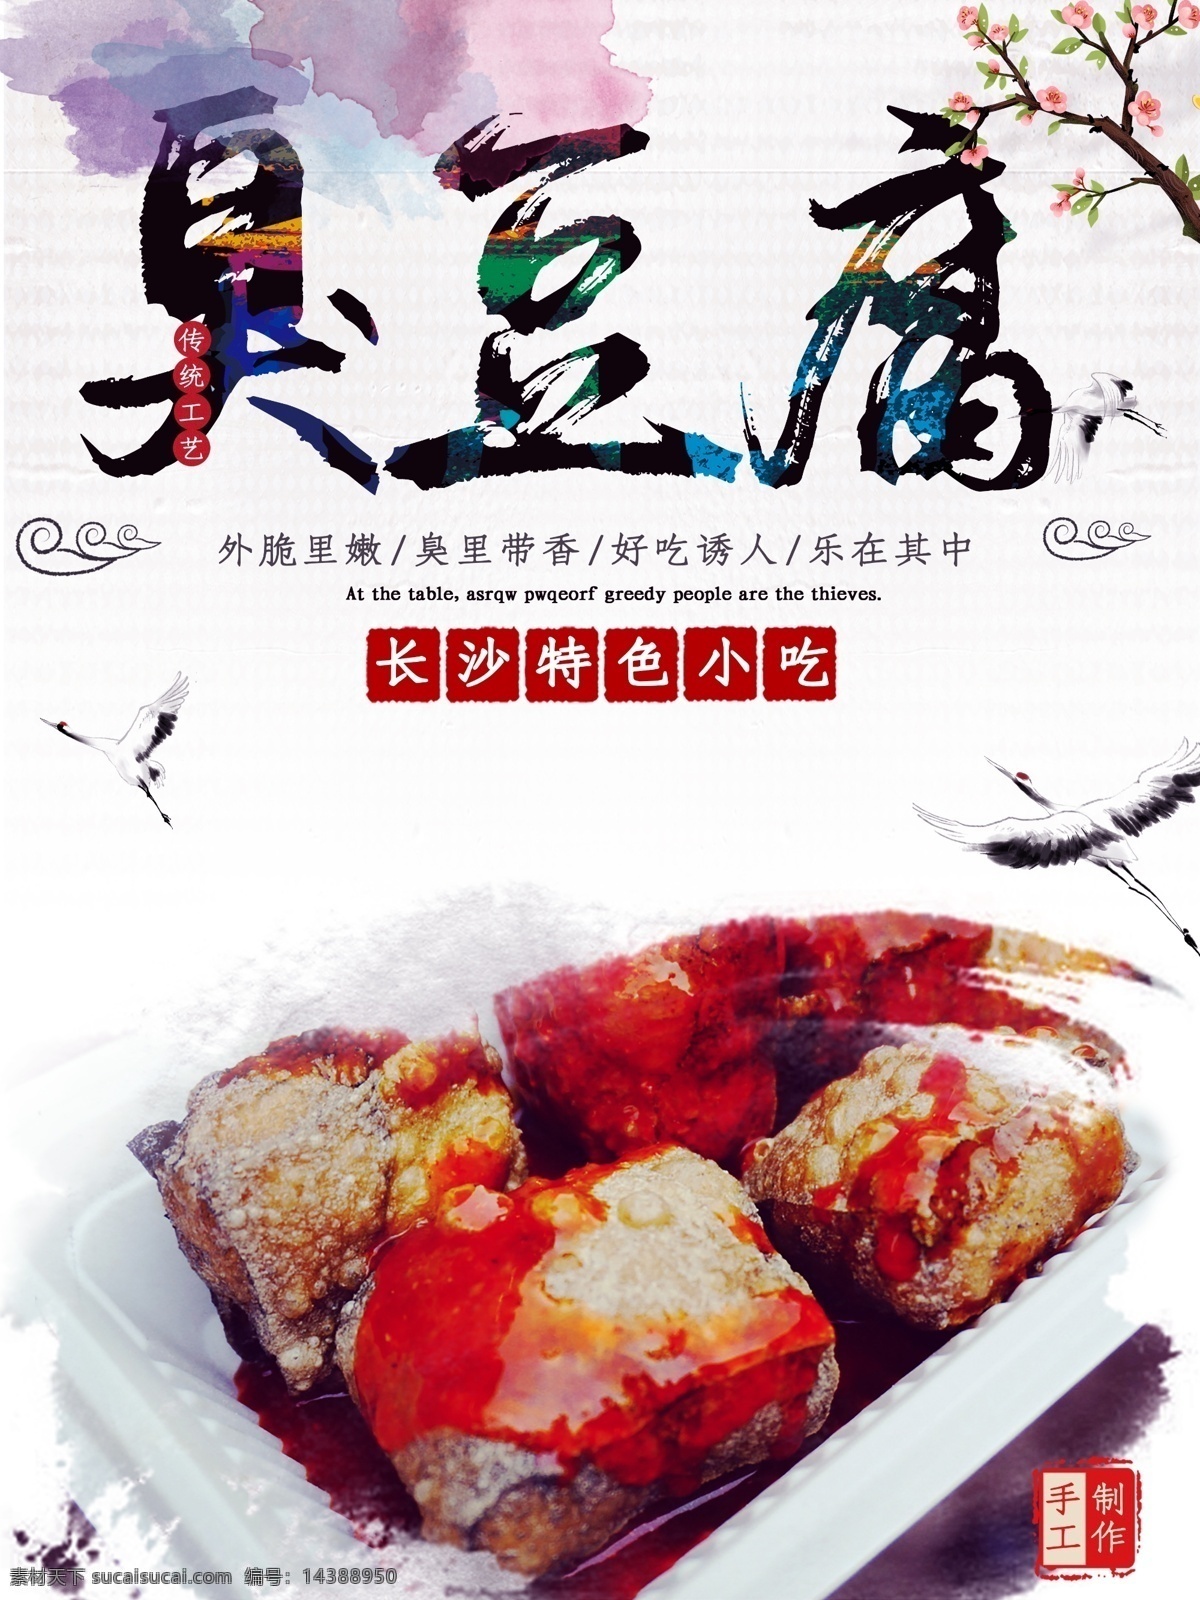 臭豆腐海报 臭豆腐 特色 小吃 麻辣 餐饮传单 广告彩页 分层